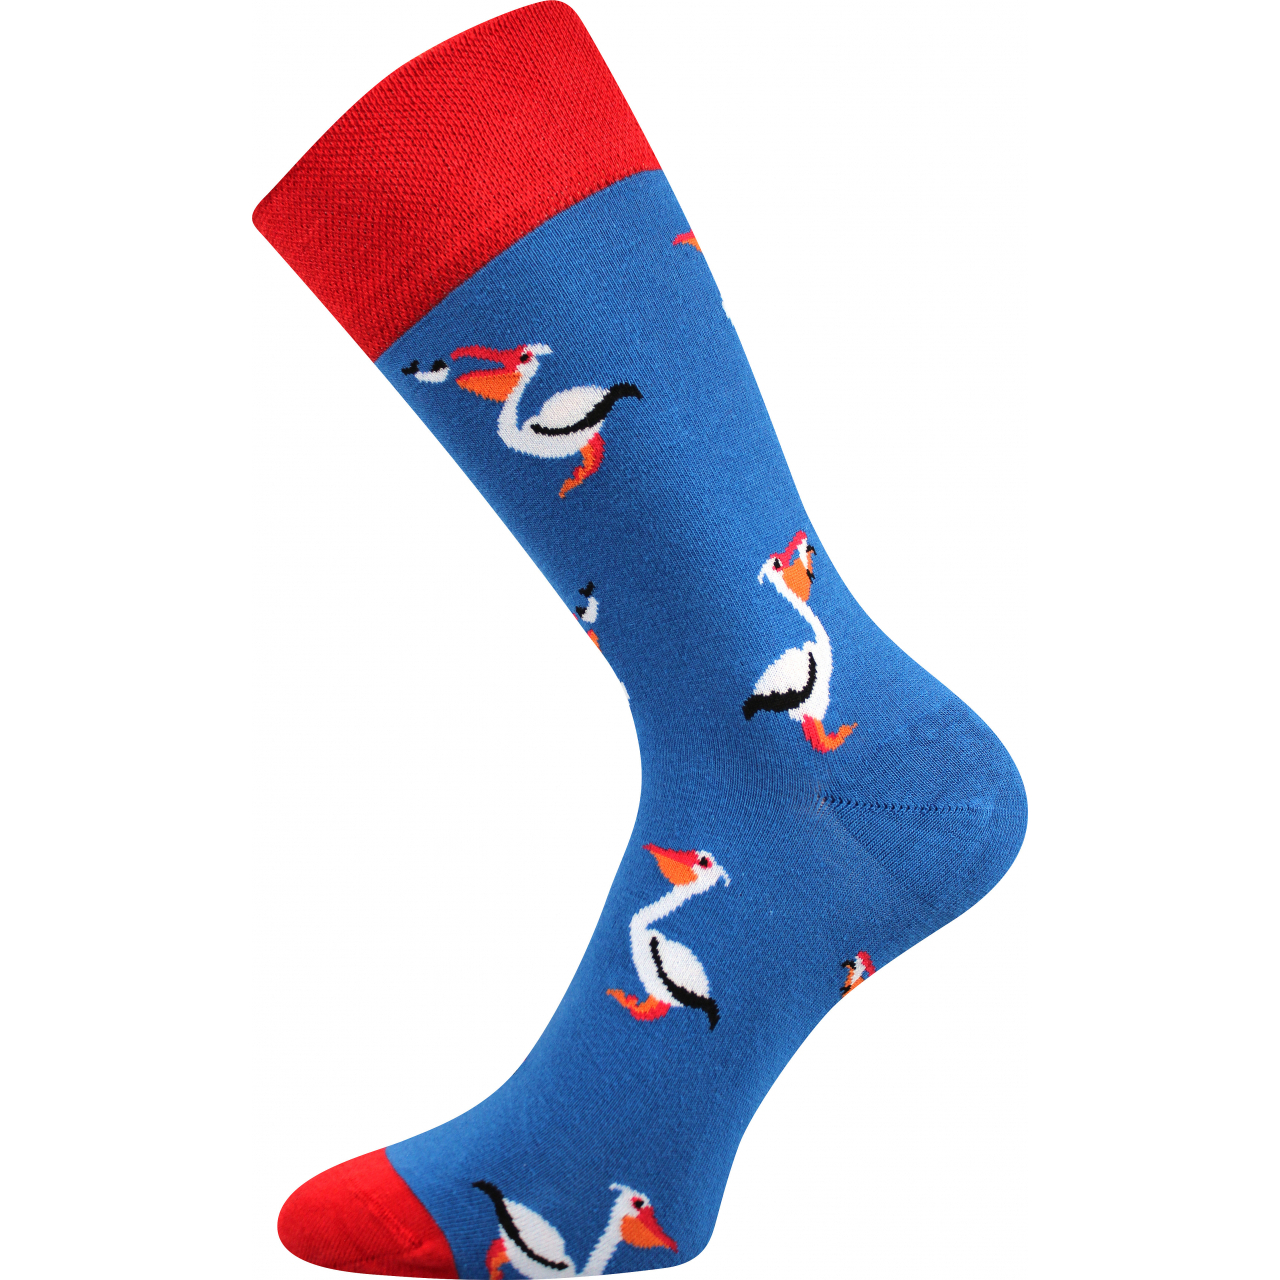 Ponožky společenské unisex Lonka Twidor Pelikáni - modré-červené, 39-42